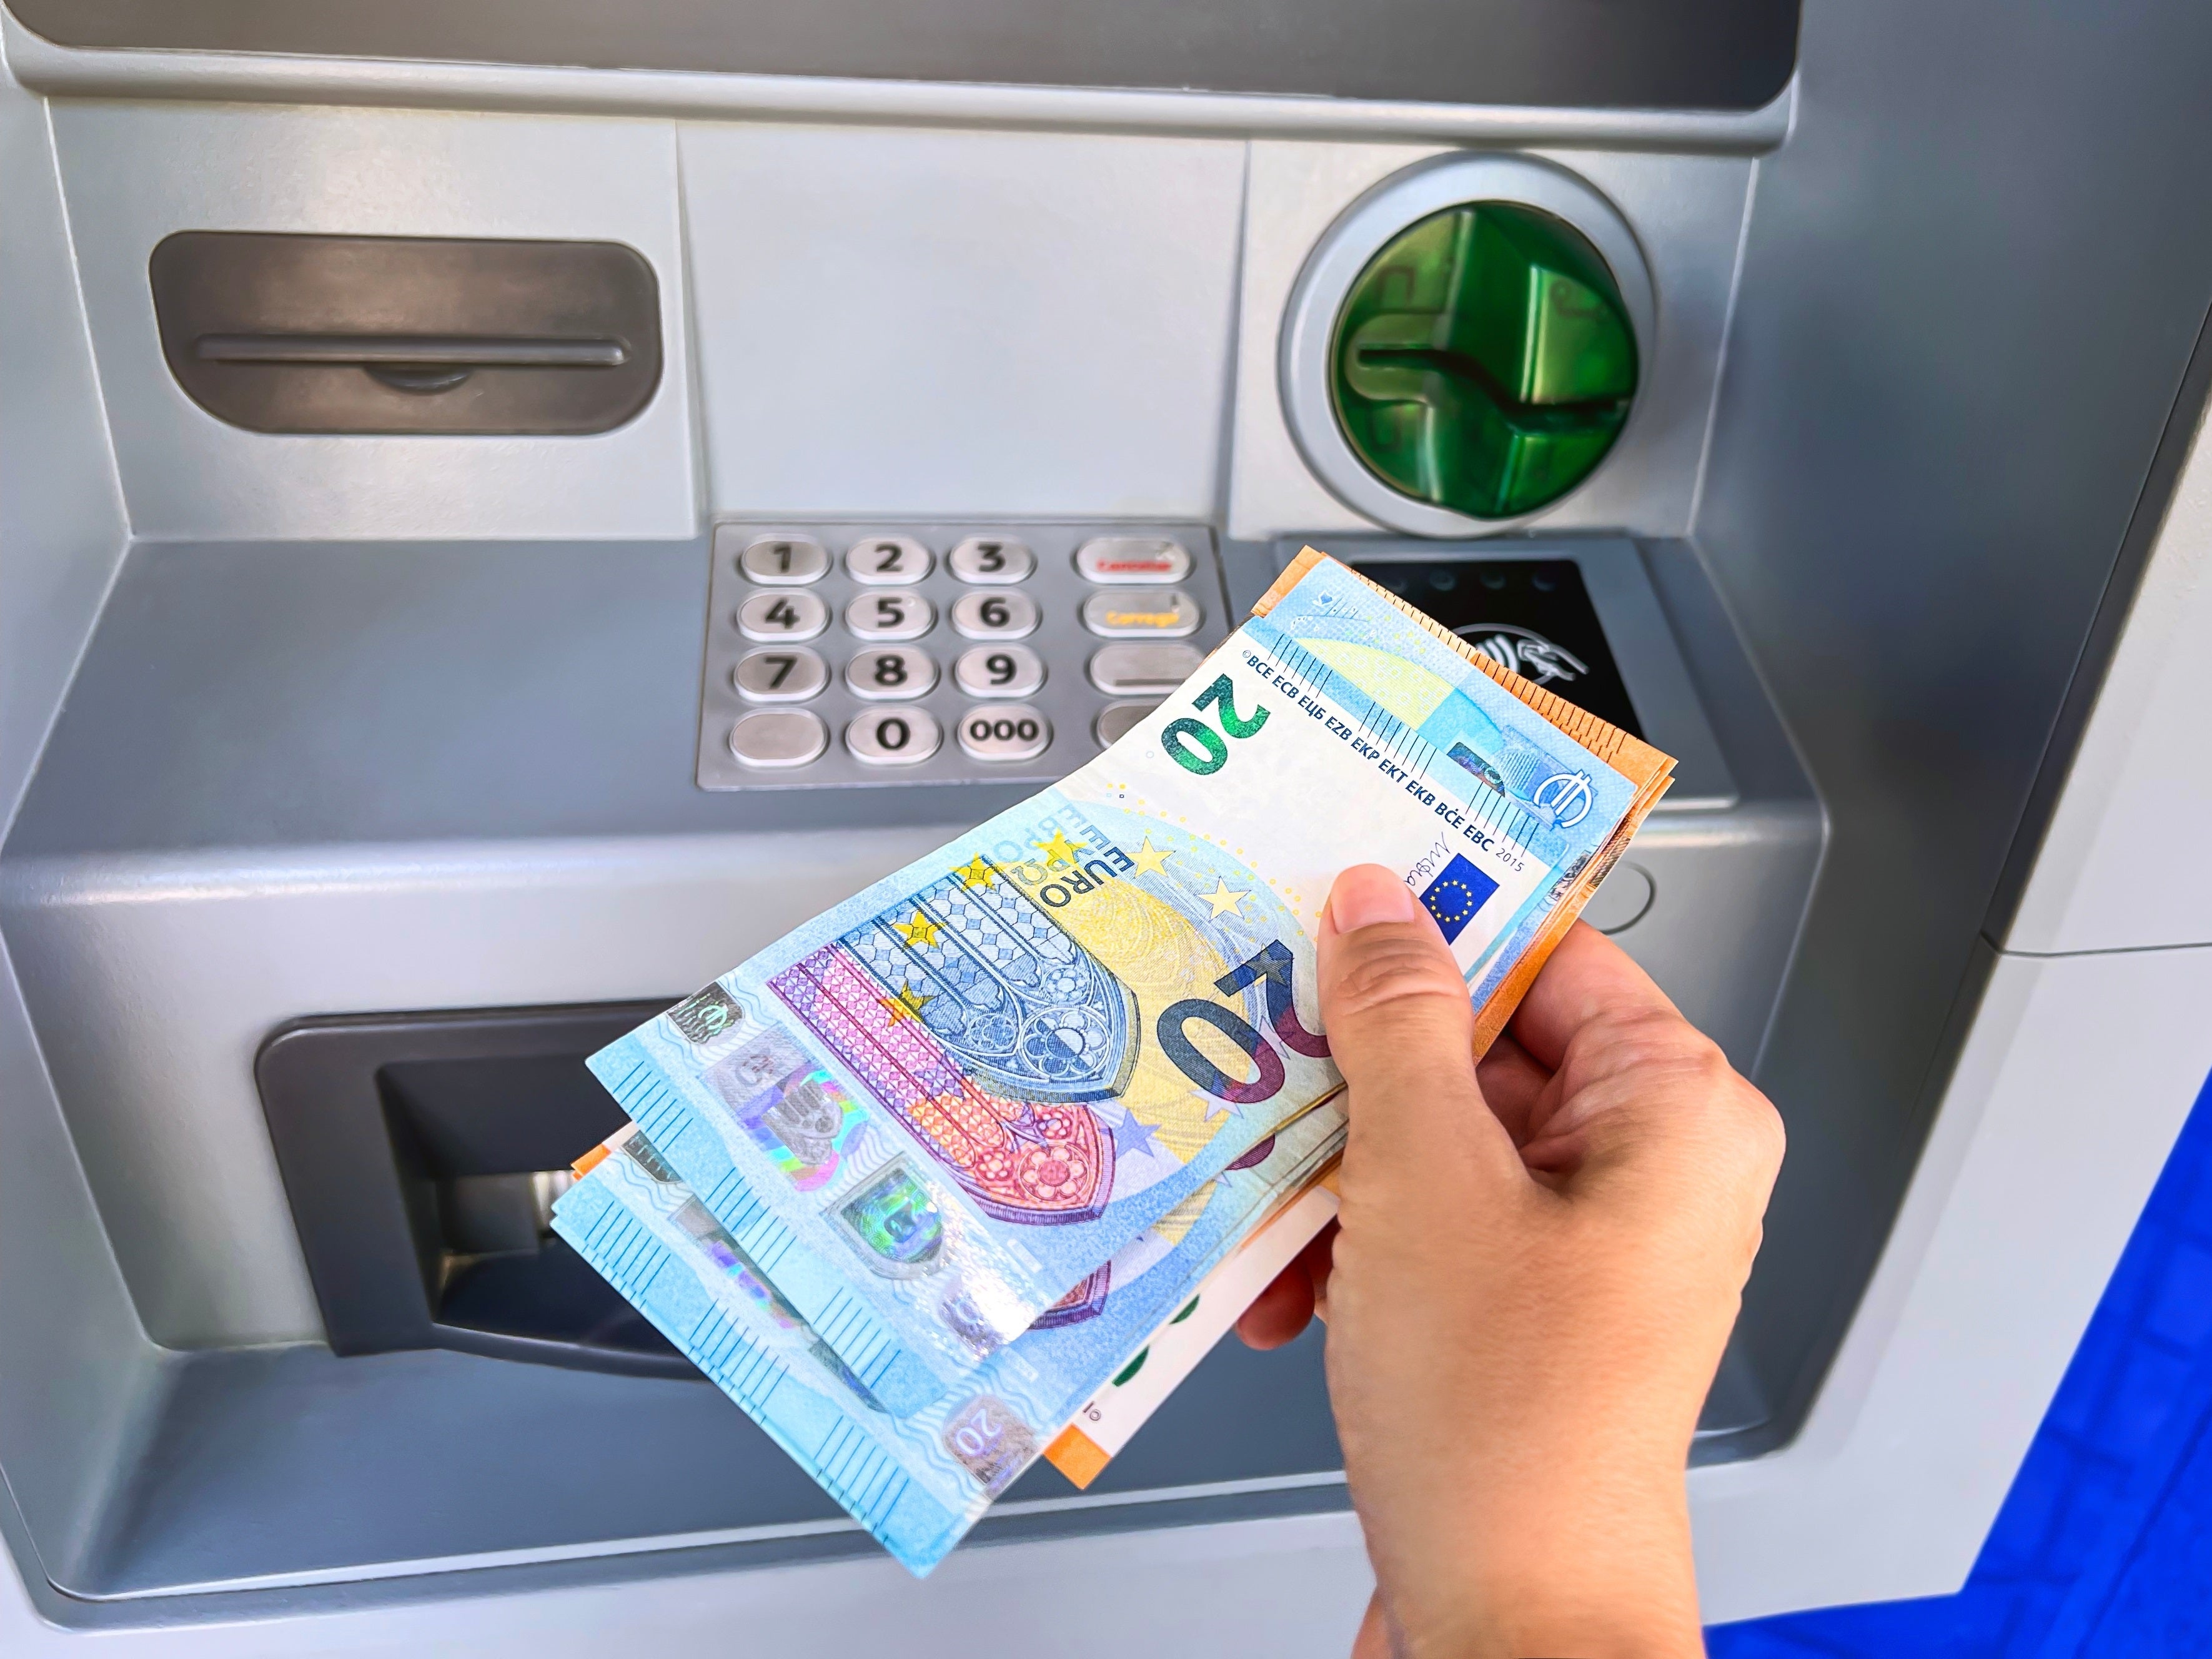 #Digitale Falle für Bankkunden – Diese 2 Geldinstitute sind betroffen